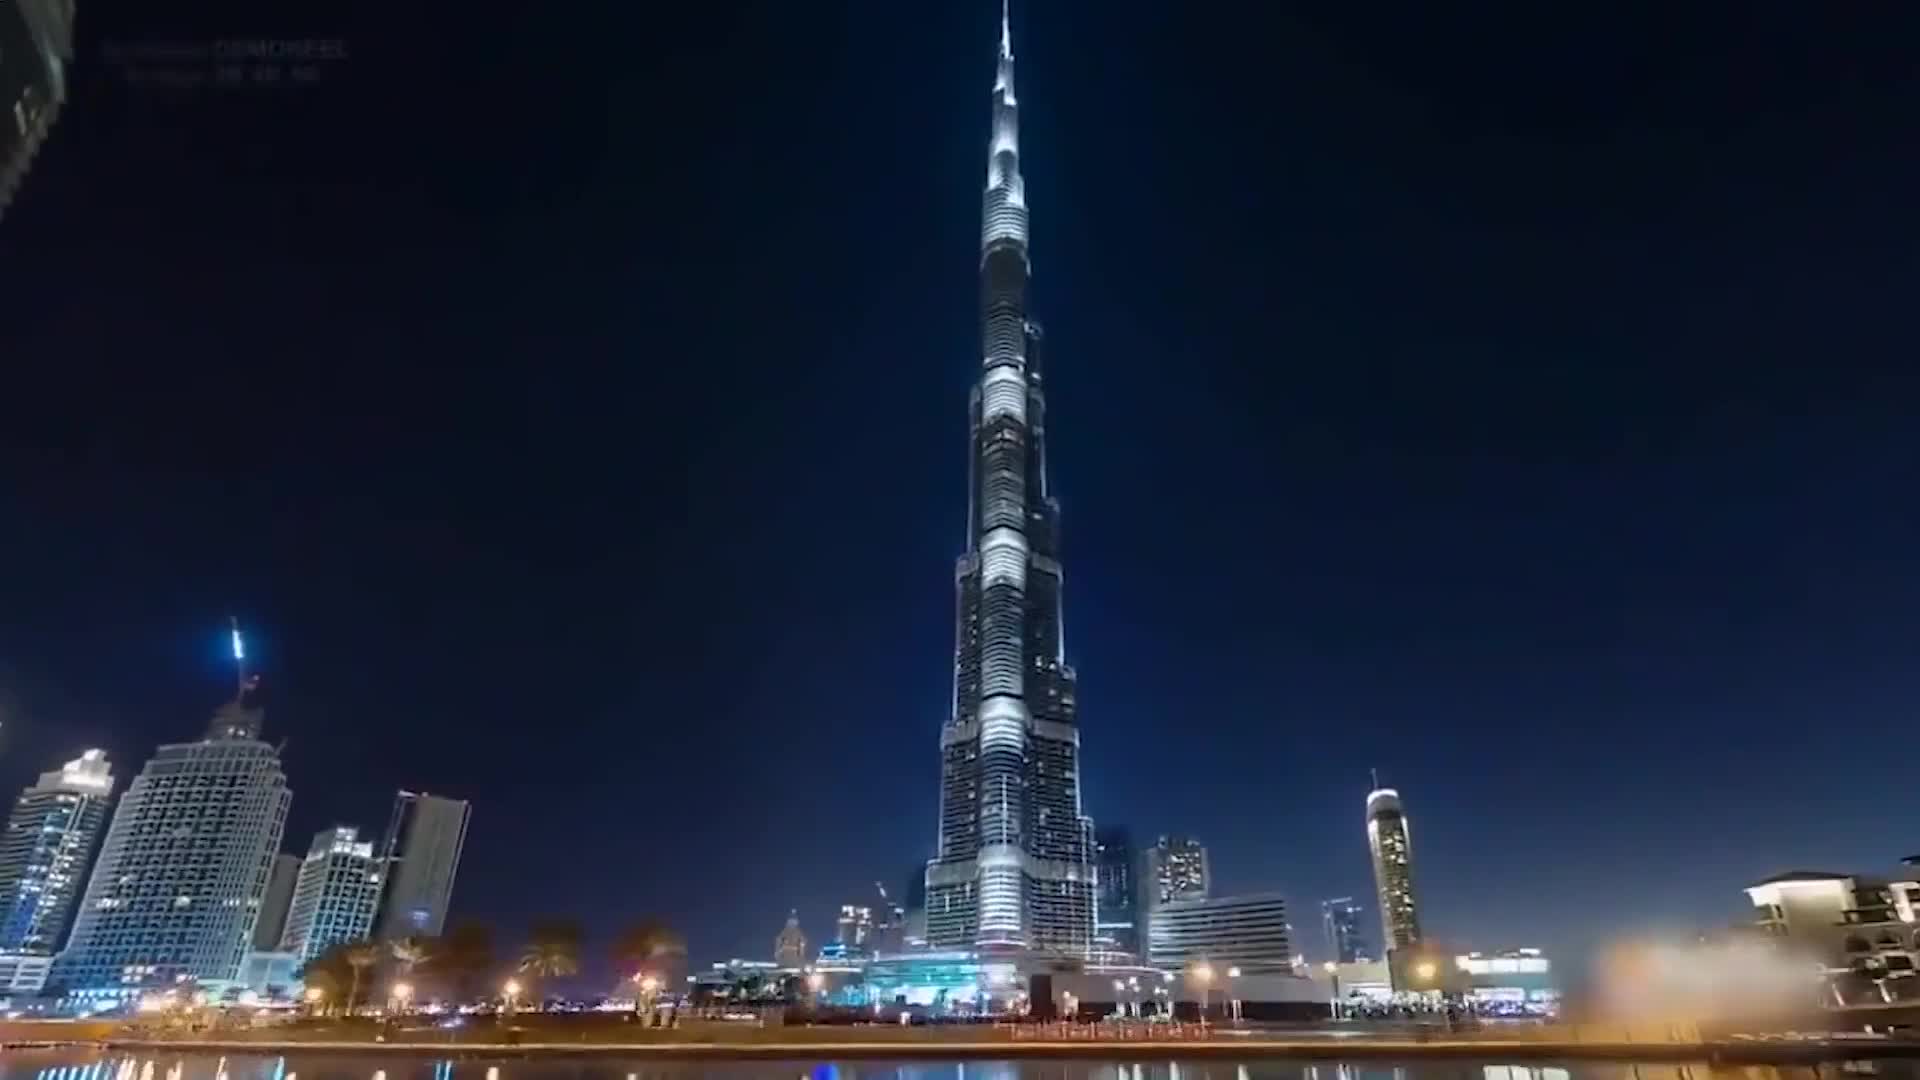 Sizzle-City Light Show - Dubai